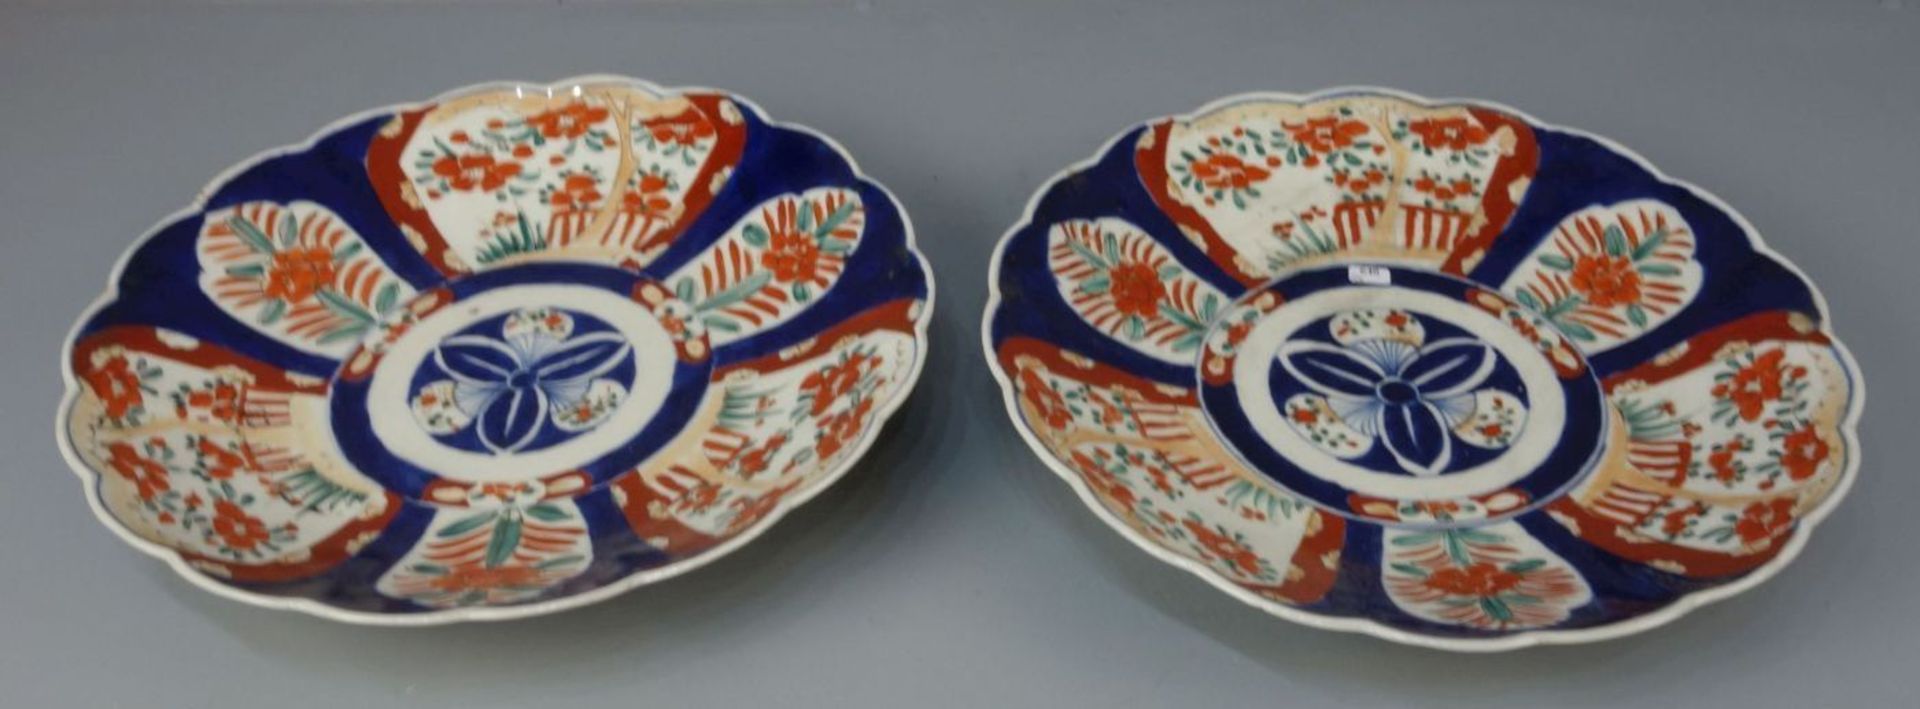 PAAR CHINESISCHE SCHALEN / pair of chinese bowls, Porzellan (ungemarkt). Flach gemuldete Schale mit